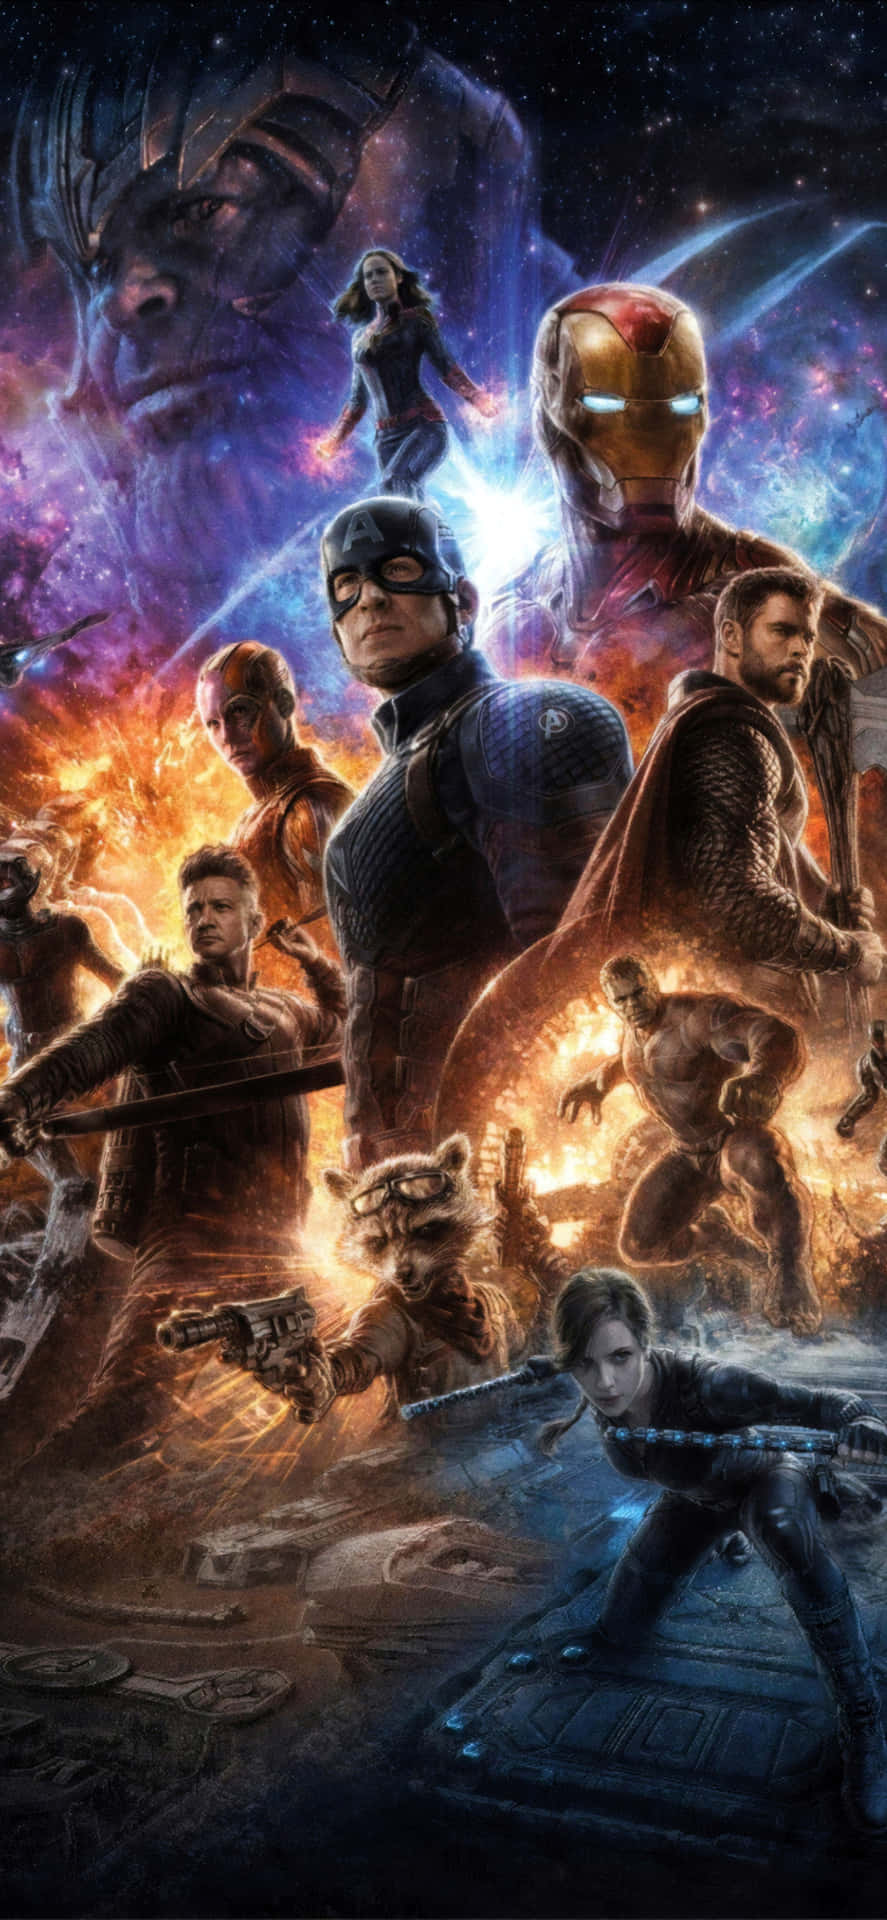 Blien Del Av Hjältarna Och #varenavenger Med Nya Avengers Endgame Iphone-bakgrunden! Wallpaper